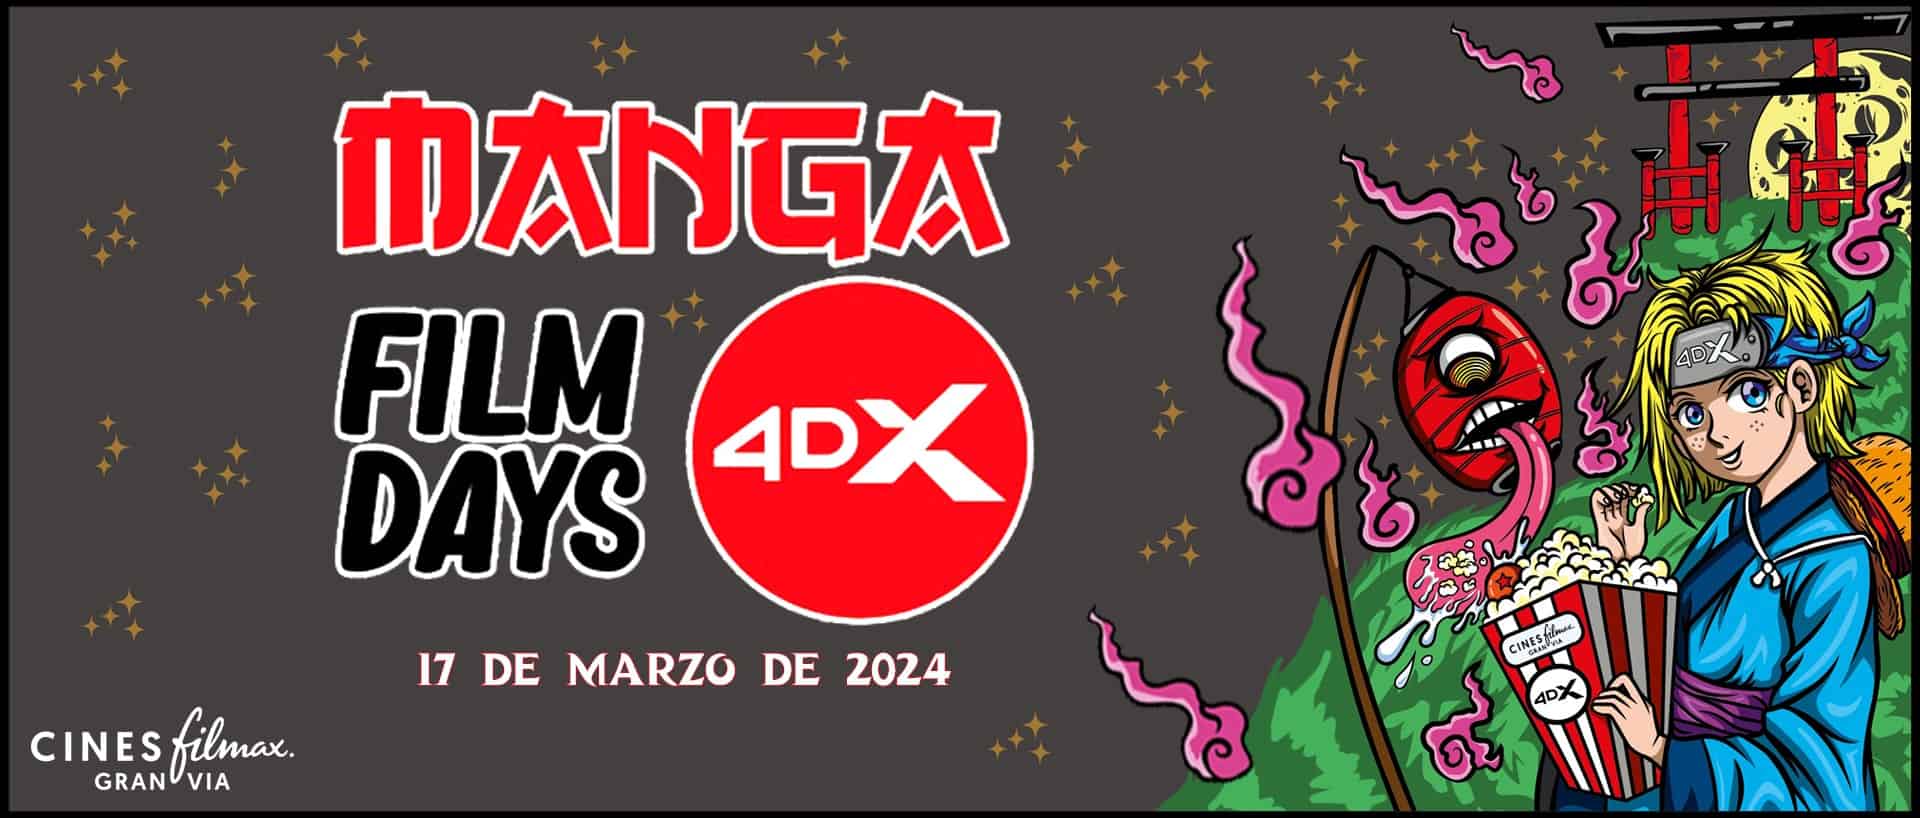 Manga Film Days 4DX Barcelona : plongez dans le monde de l'anime comme jamais auparavant !